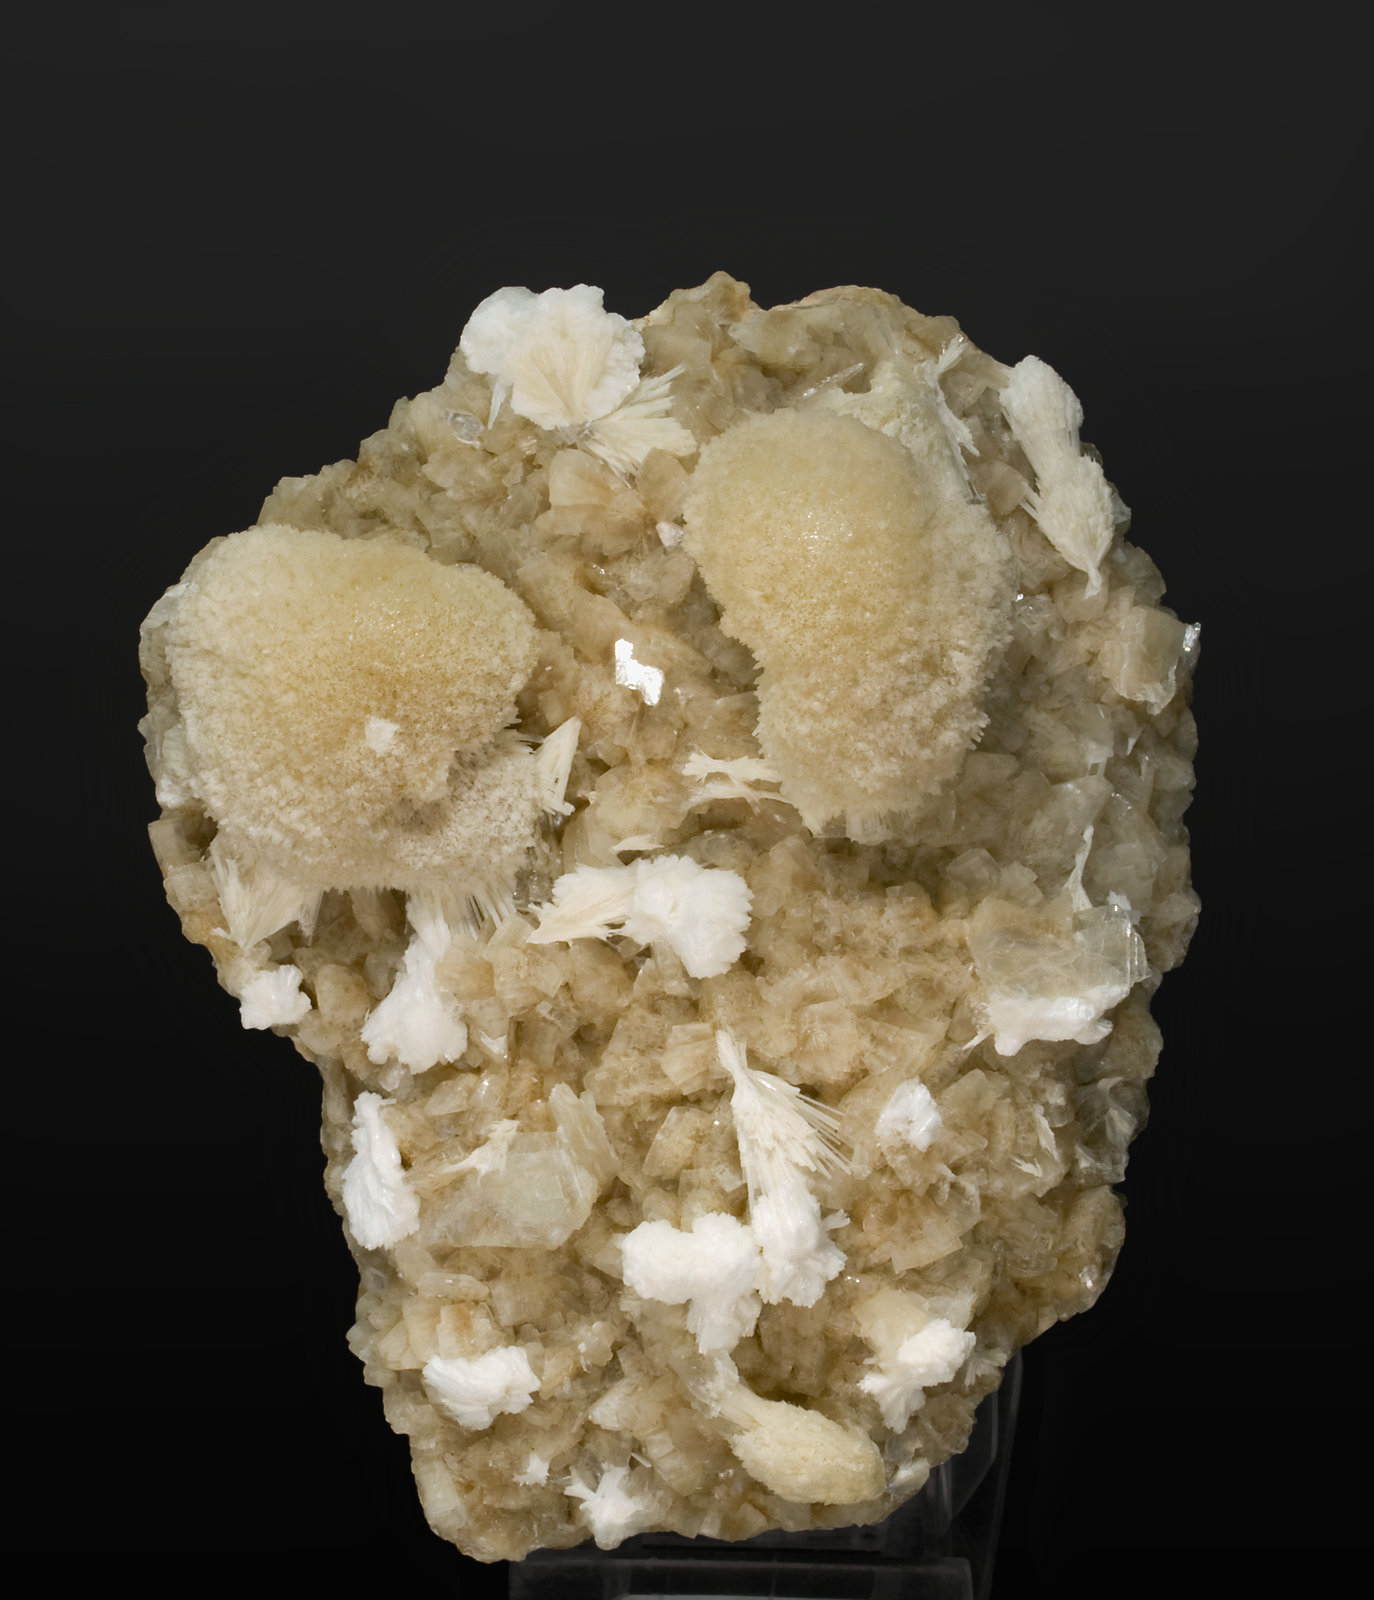 specimens/s_imagesR9/Mesolite-MF12R9.jpg